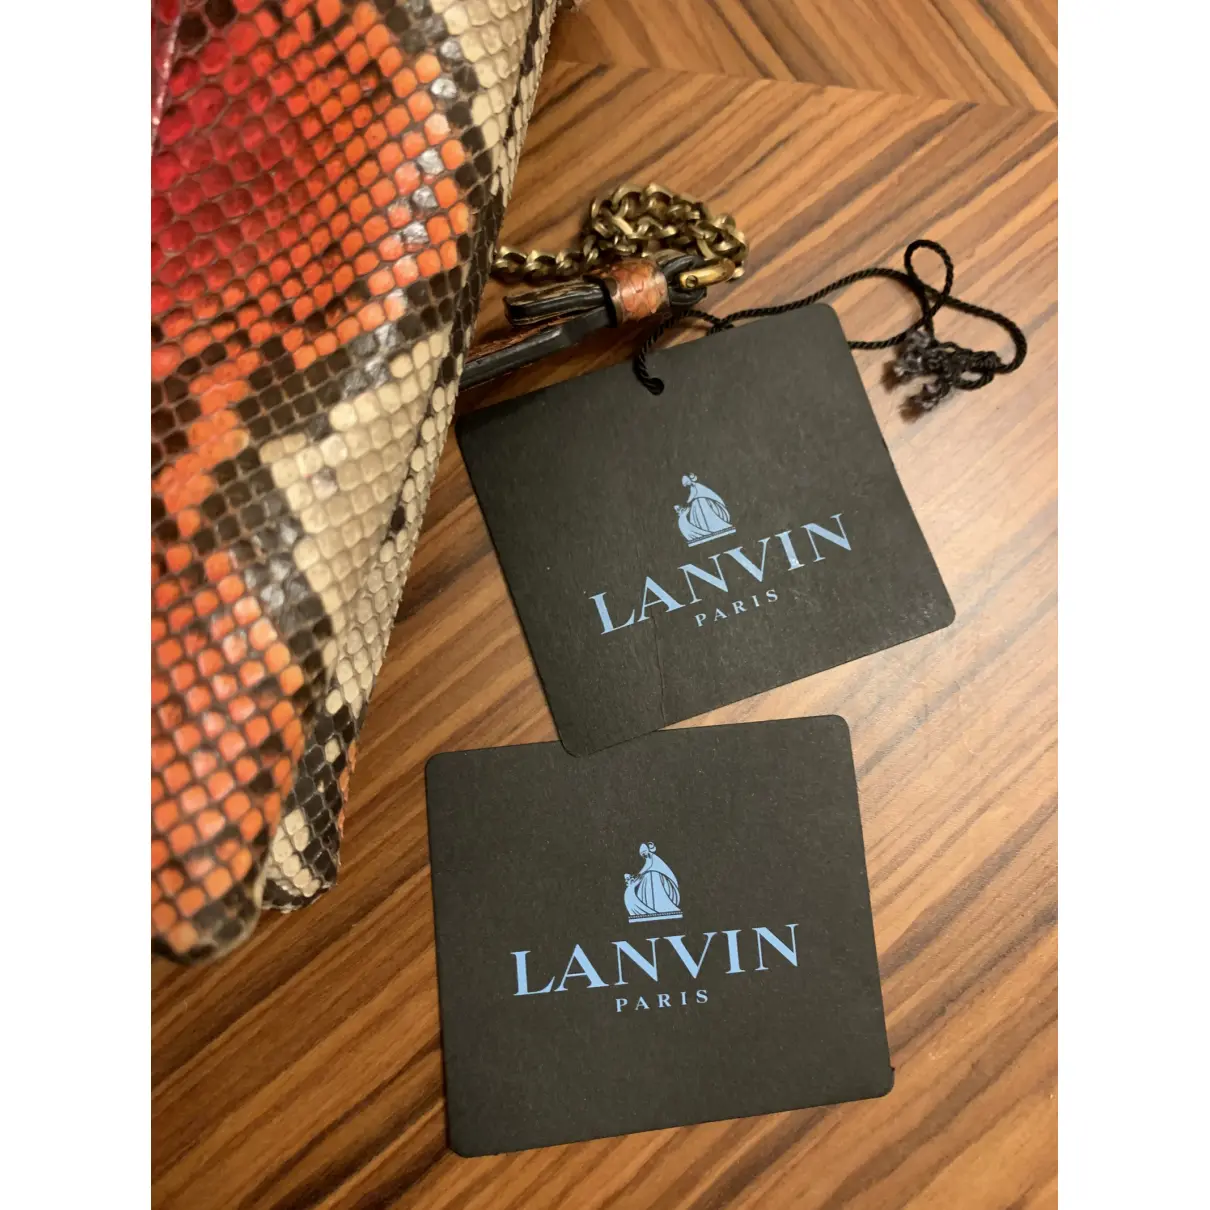 Sugar python handbag Lanvin